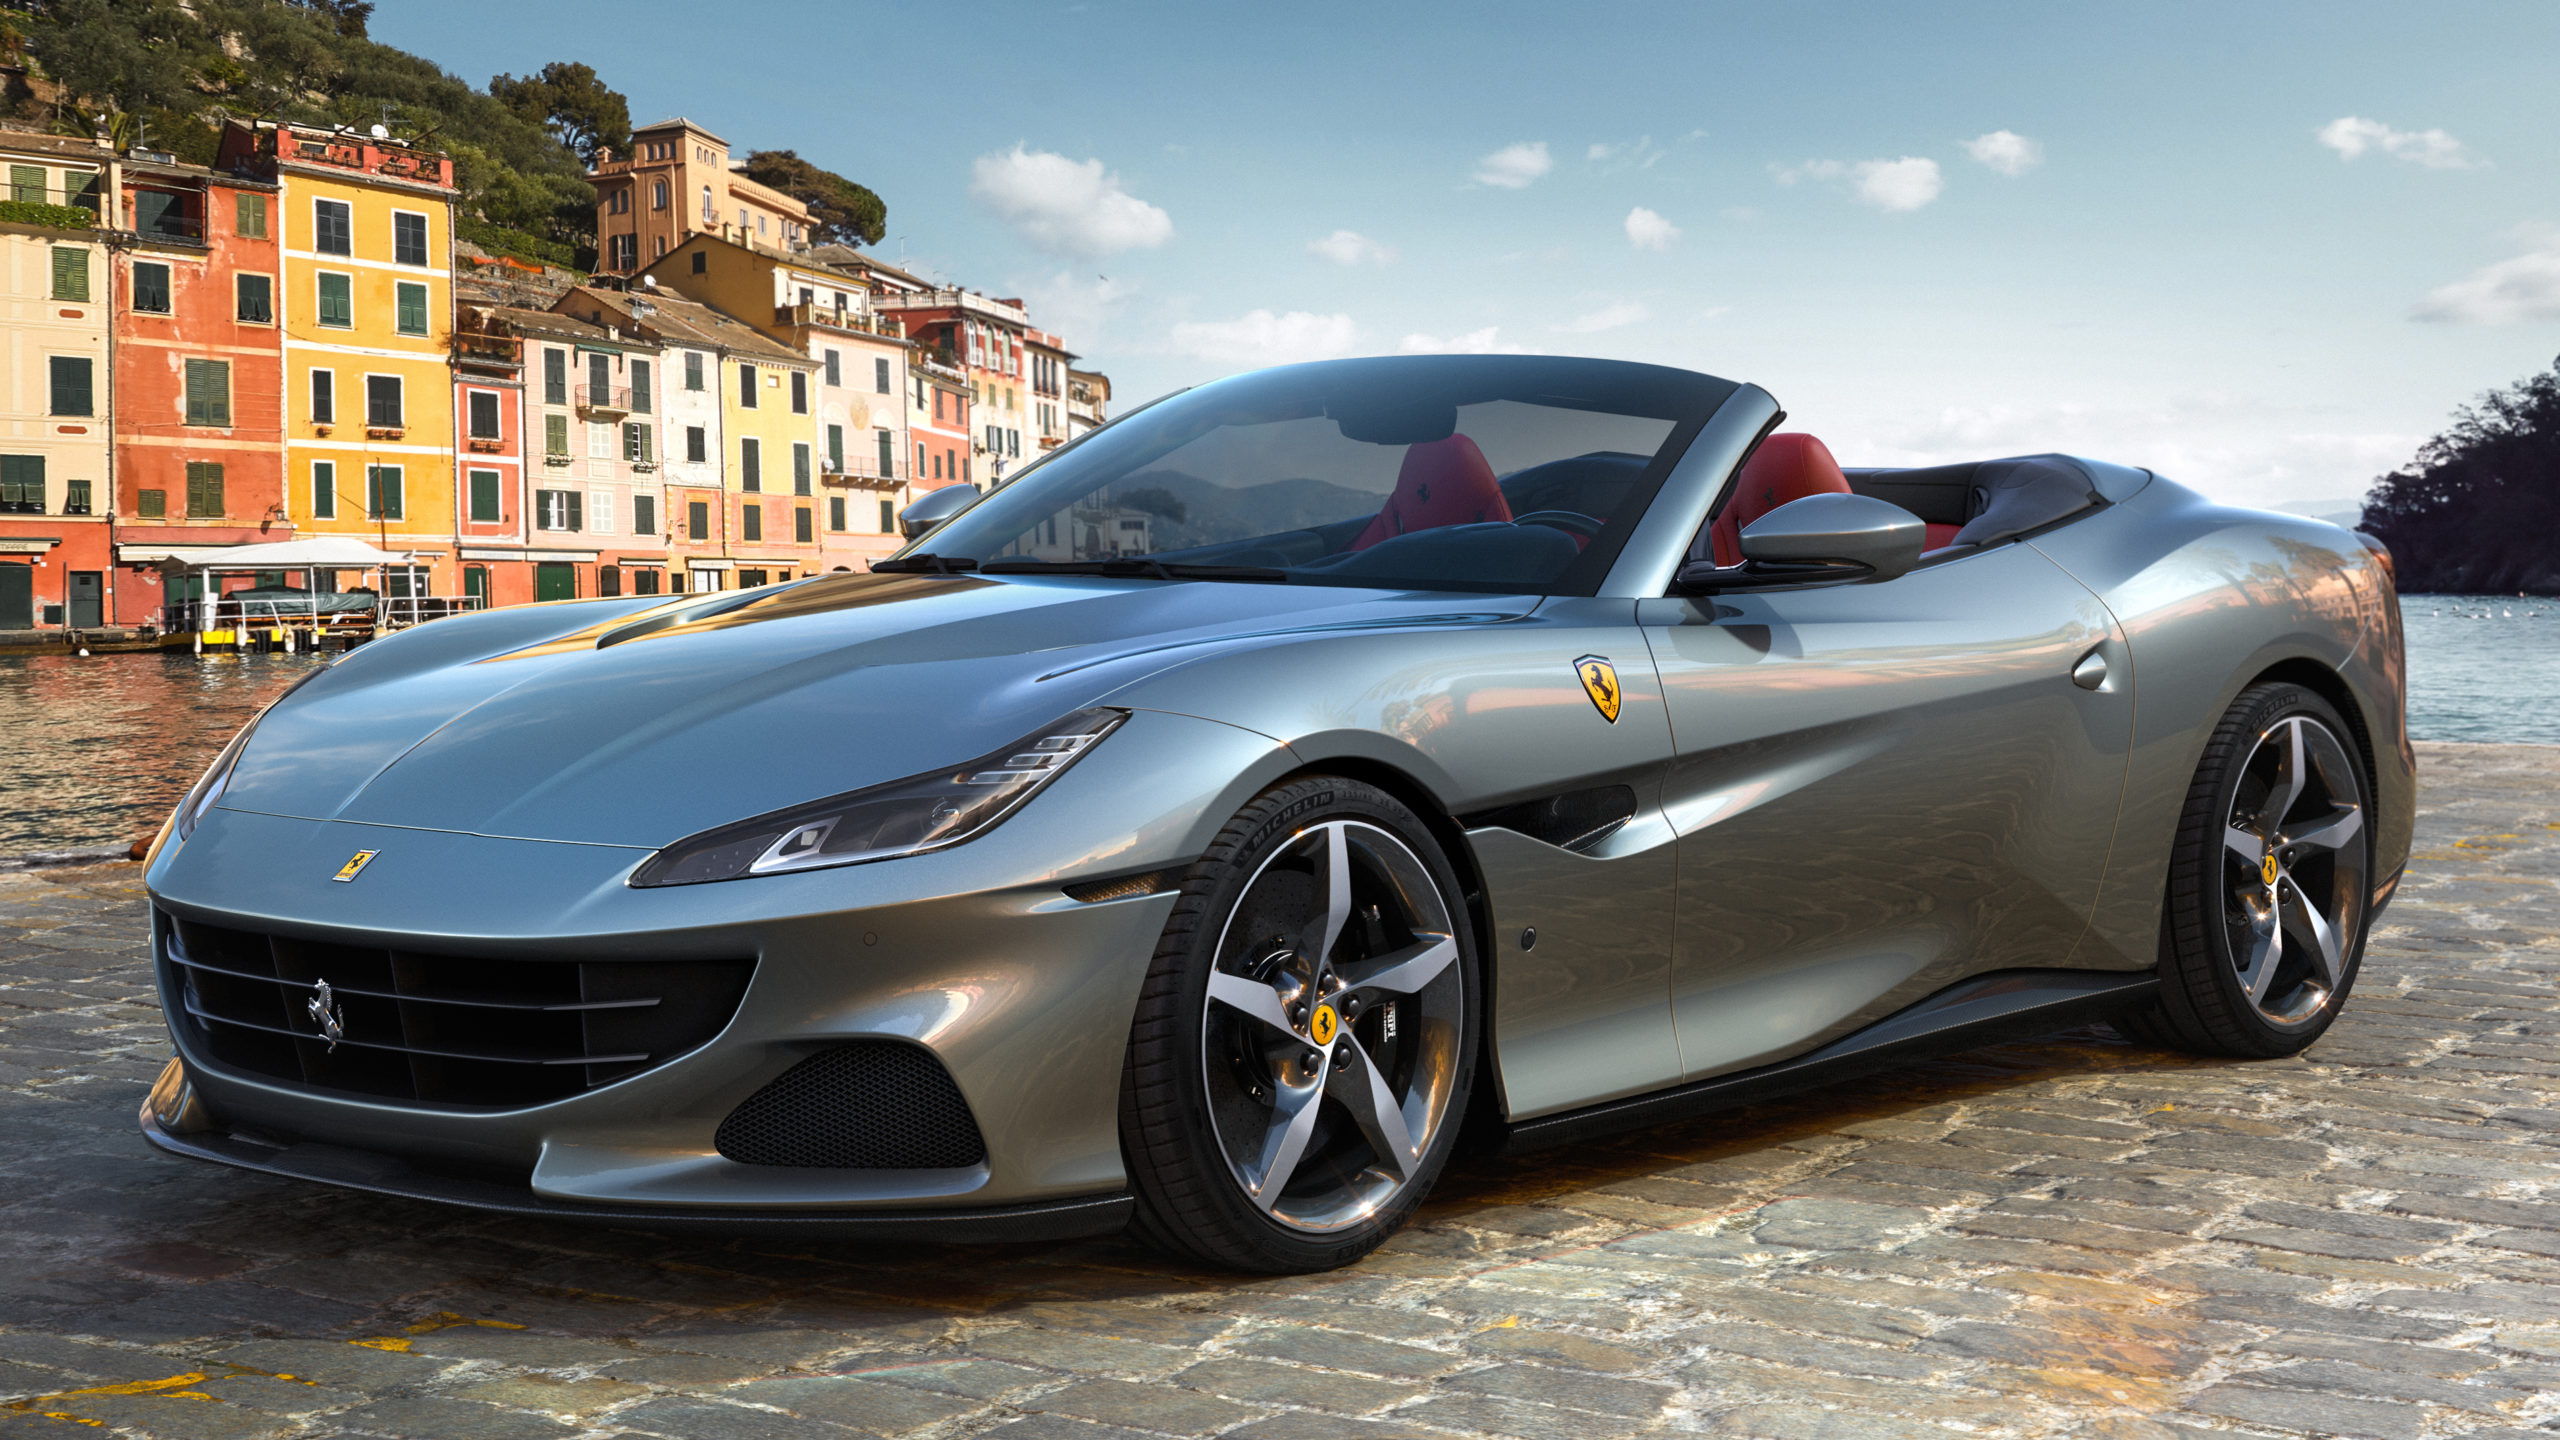 Nuova Ferrari Portofino M, la spider di Maranello ora è “Modificata”